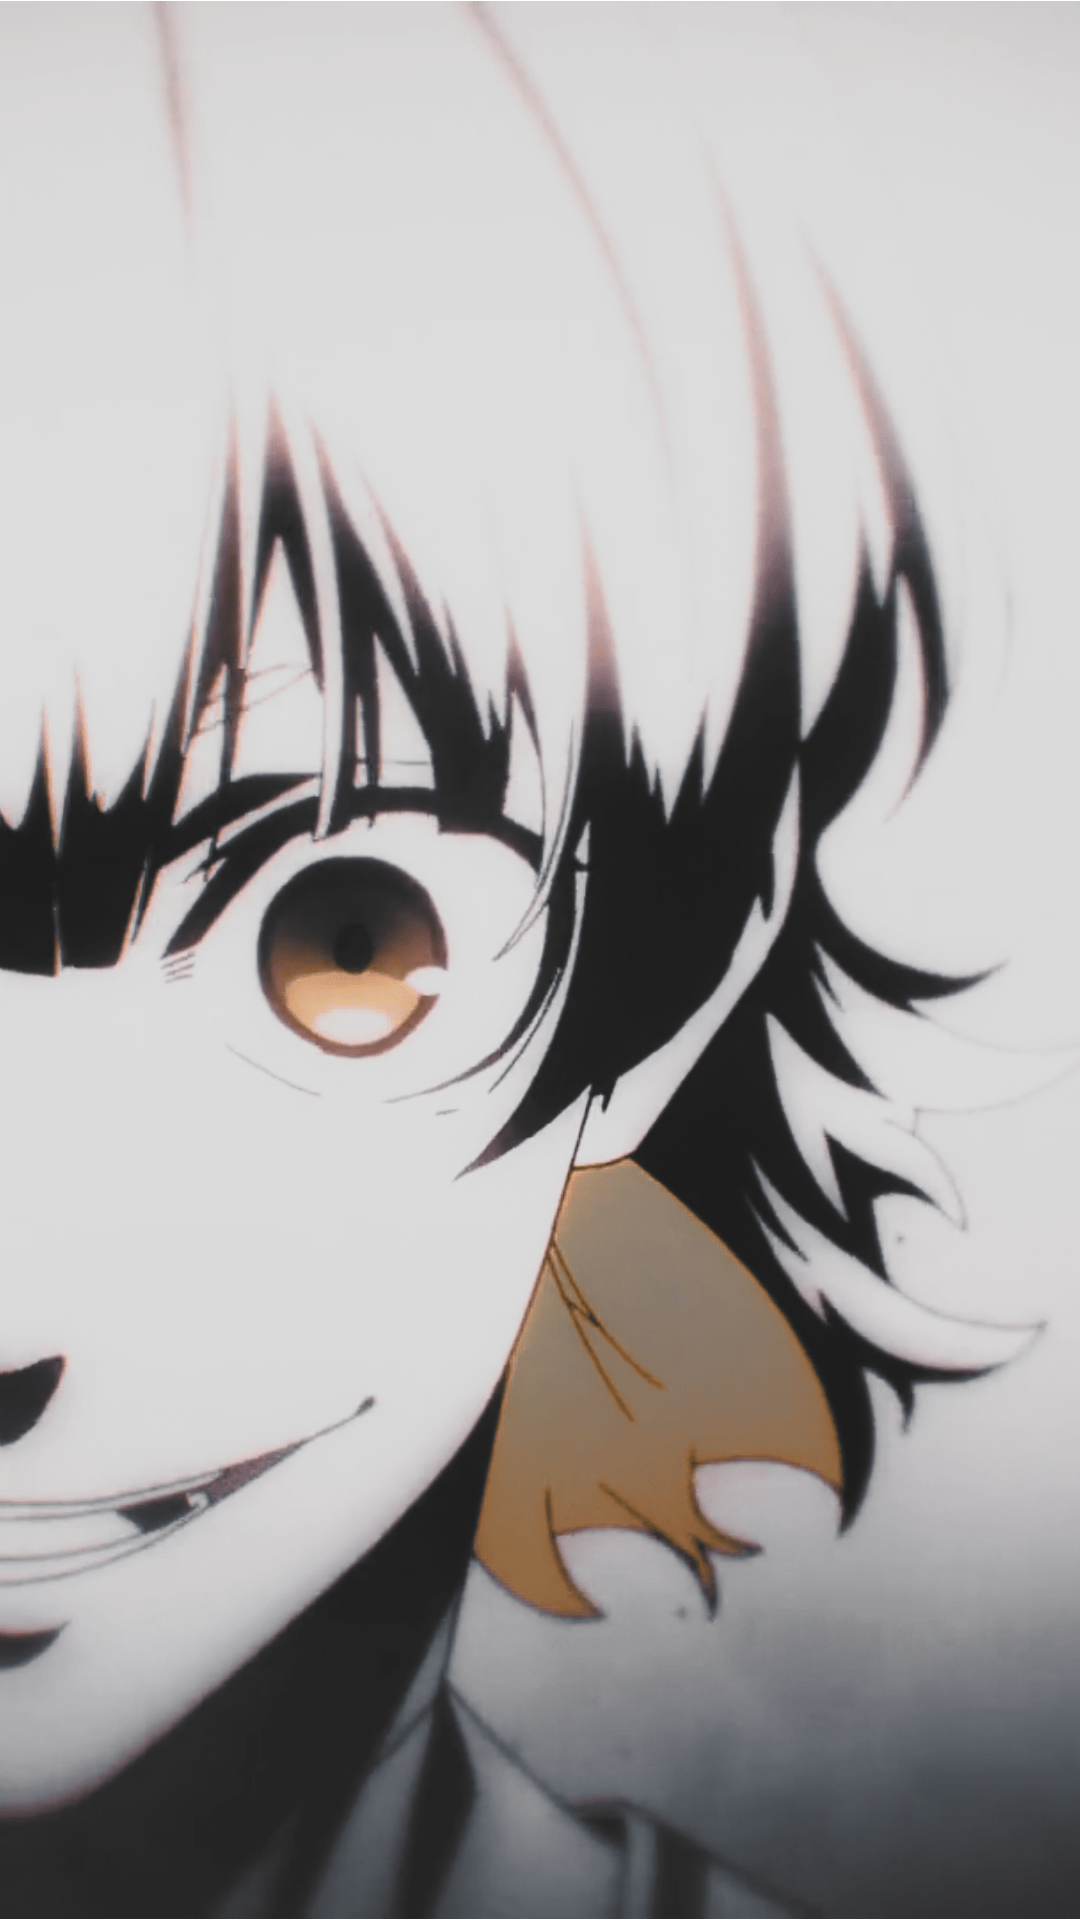 𝘉𝘢𝘤𝘩𝘪𝘳𝘢 𝘔𝘦𝘨𝘶𝘳𝘶  𝘉𝘭𝘶𝘦 𝘭𝘰𝘤𝘬   Fotografi tempo dulu  Gambar profil Gambar anime